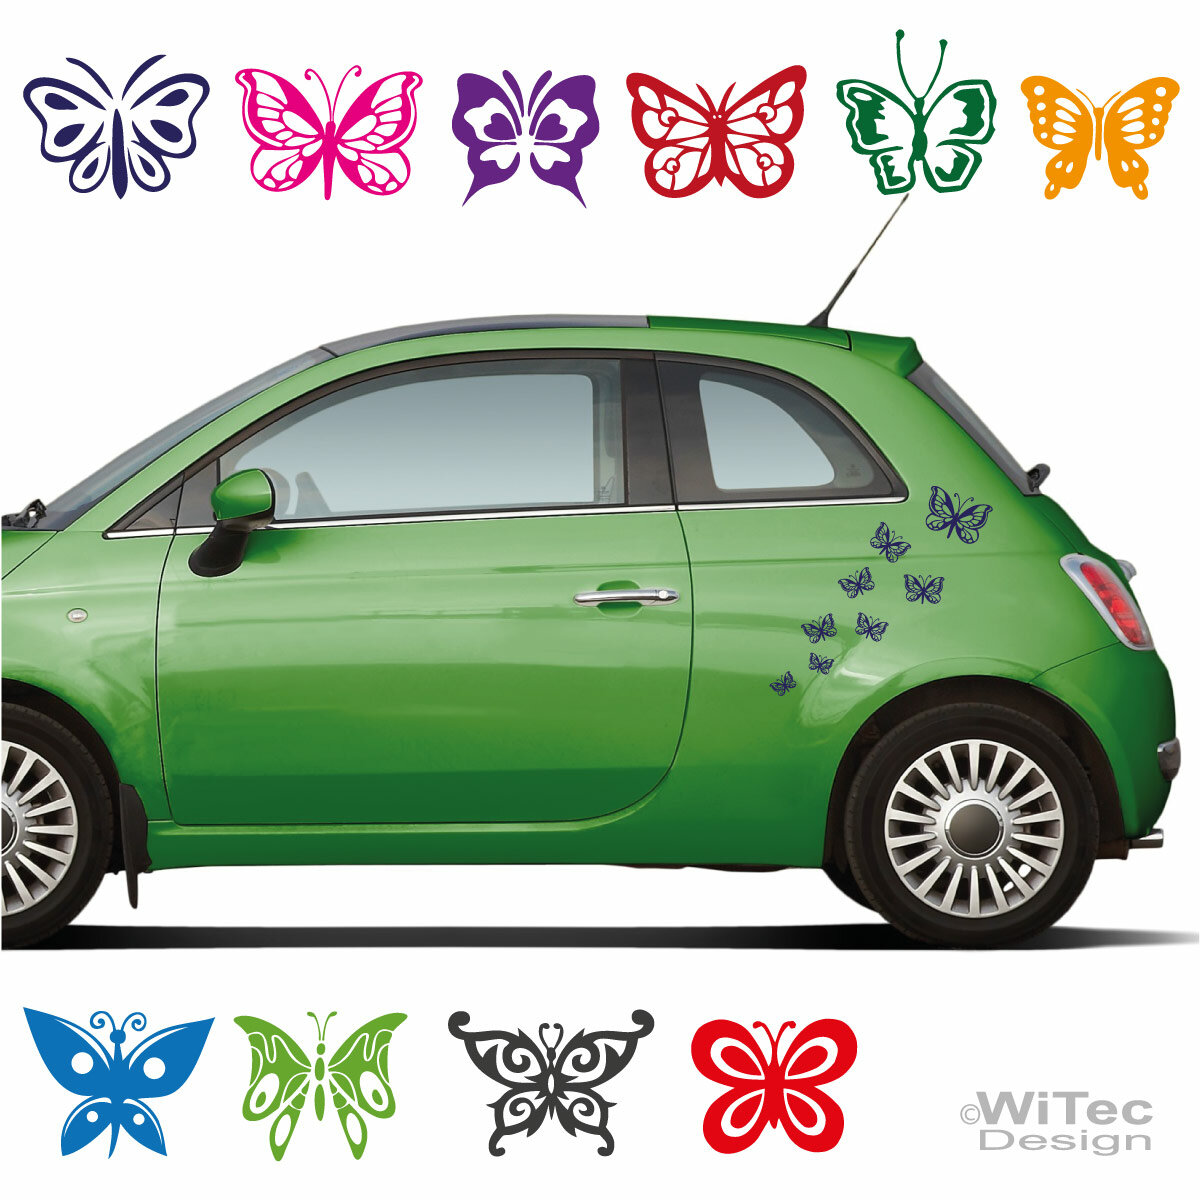 Sticker / Aufkleber Schmetterling, für Auto / Motorrad / Laptop / Dekoration  / Kühlschrank, Blau-Schwarz, 4-teiliges Set : : Auto & Motorrad